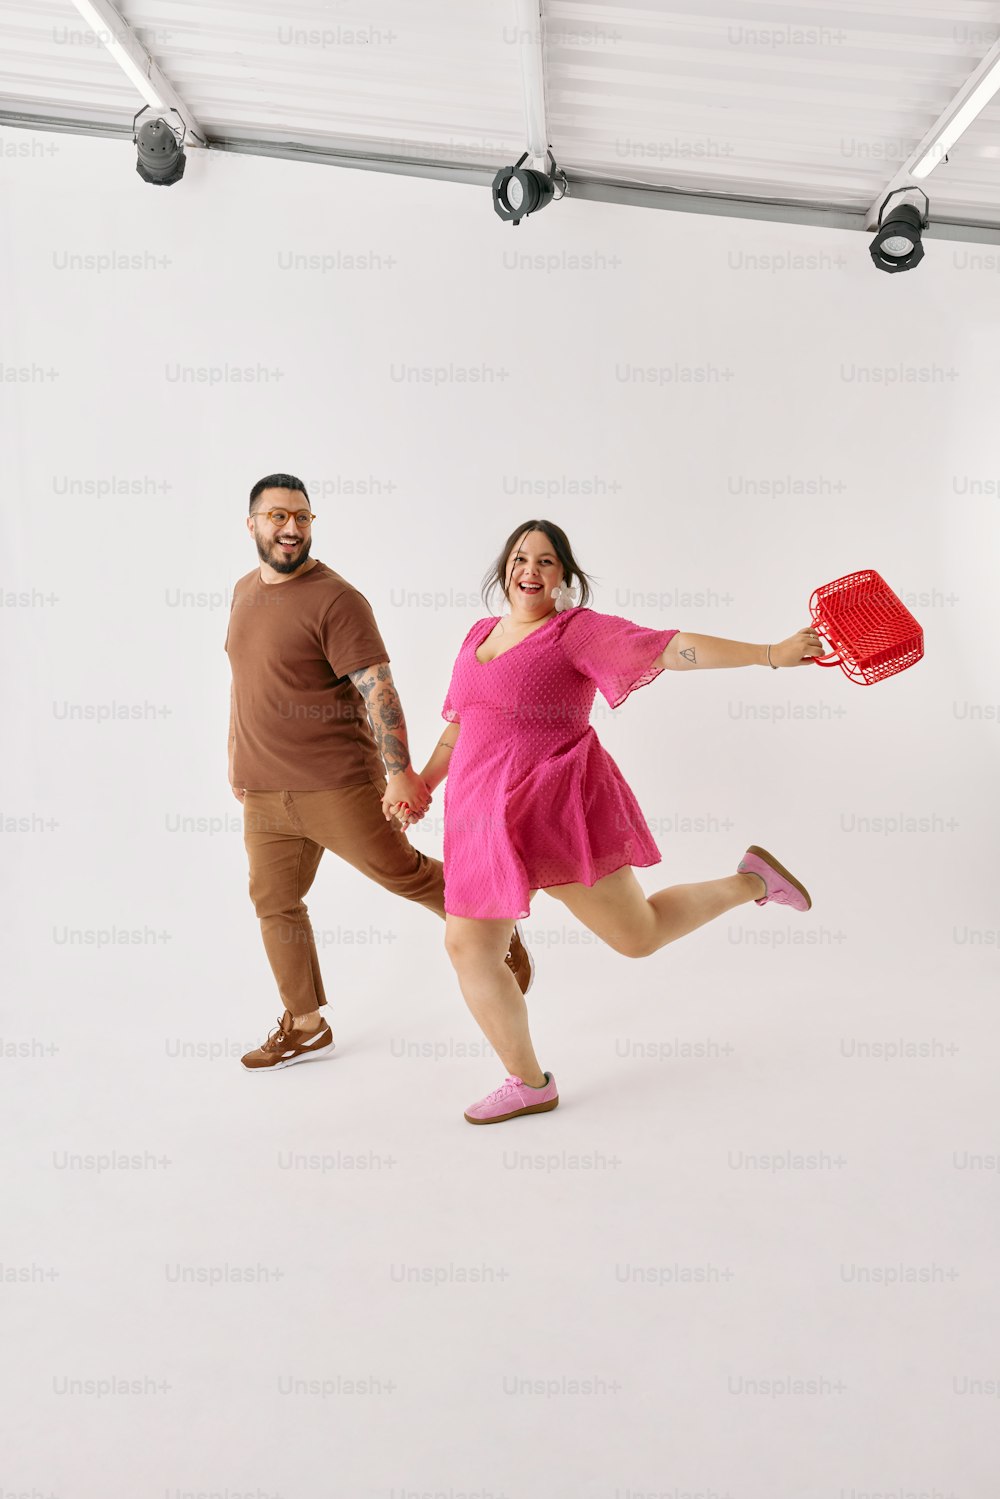 Ein Mann und eine Frau halten eine rote Frisbee in der Hand